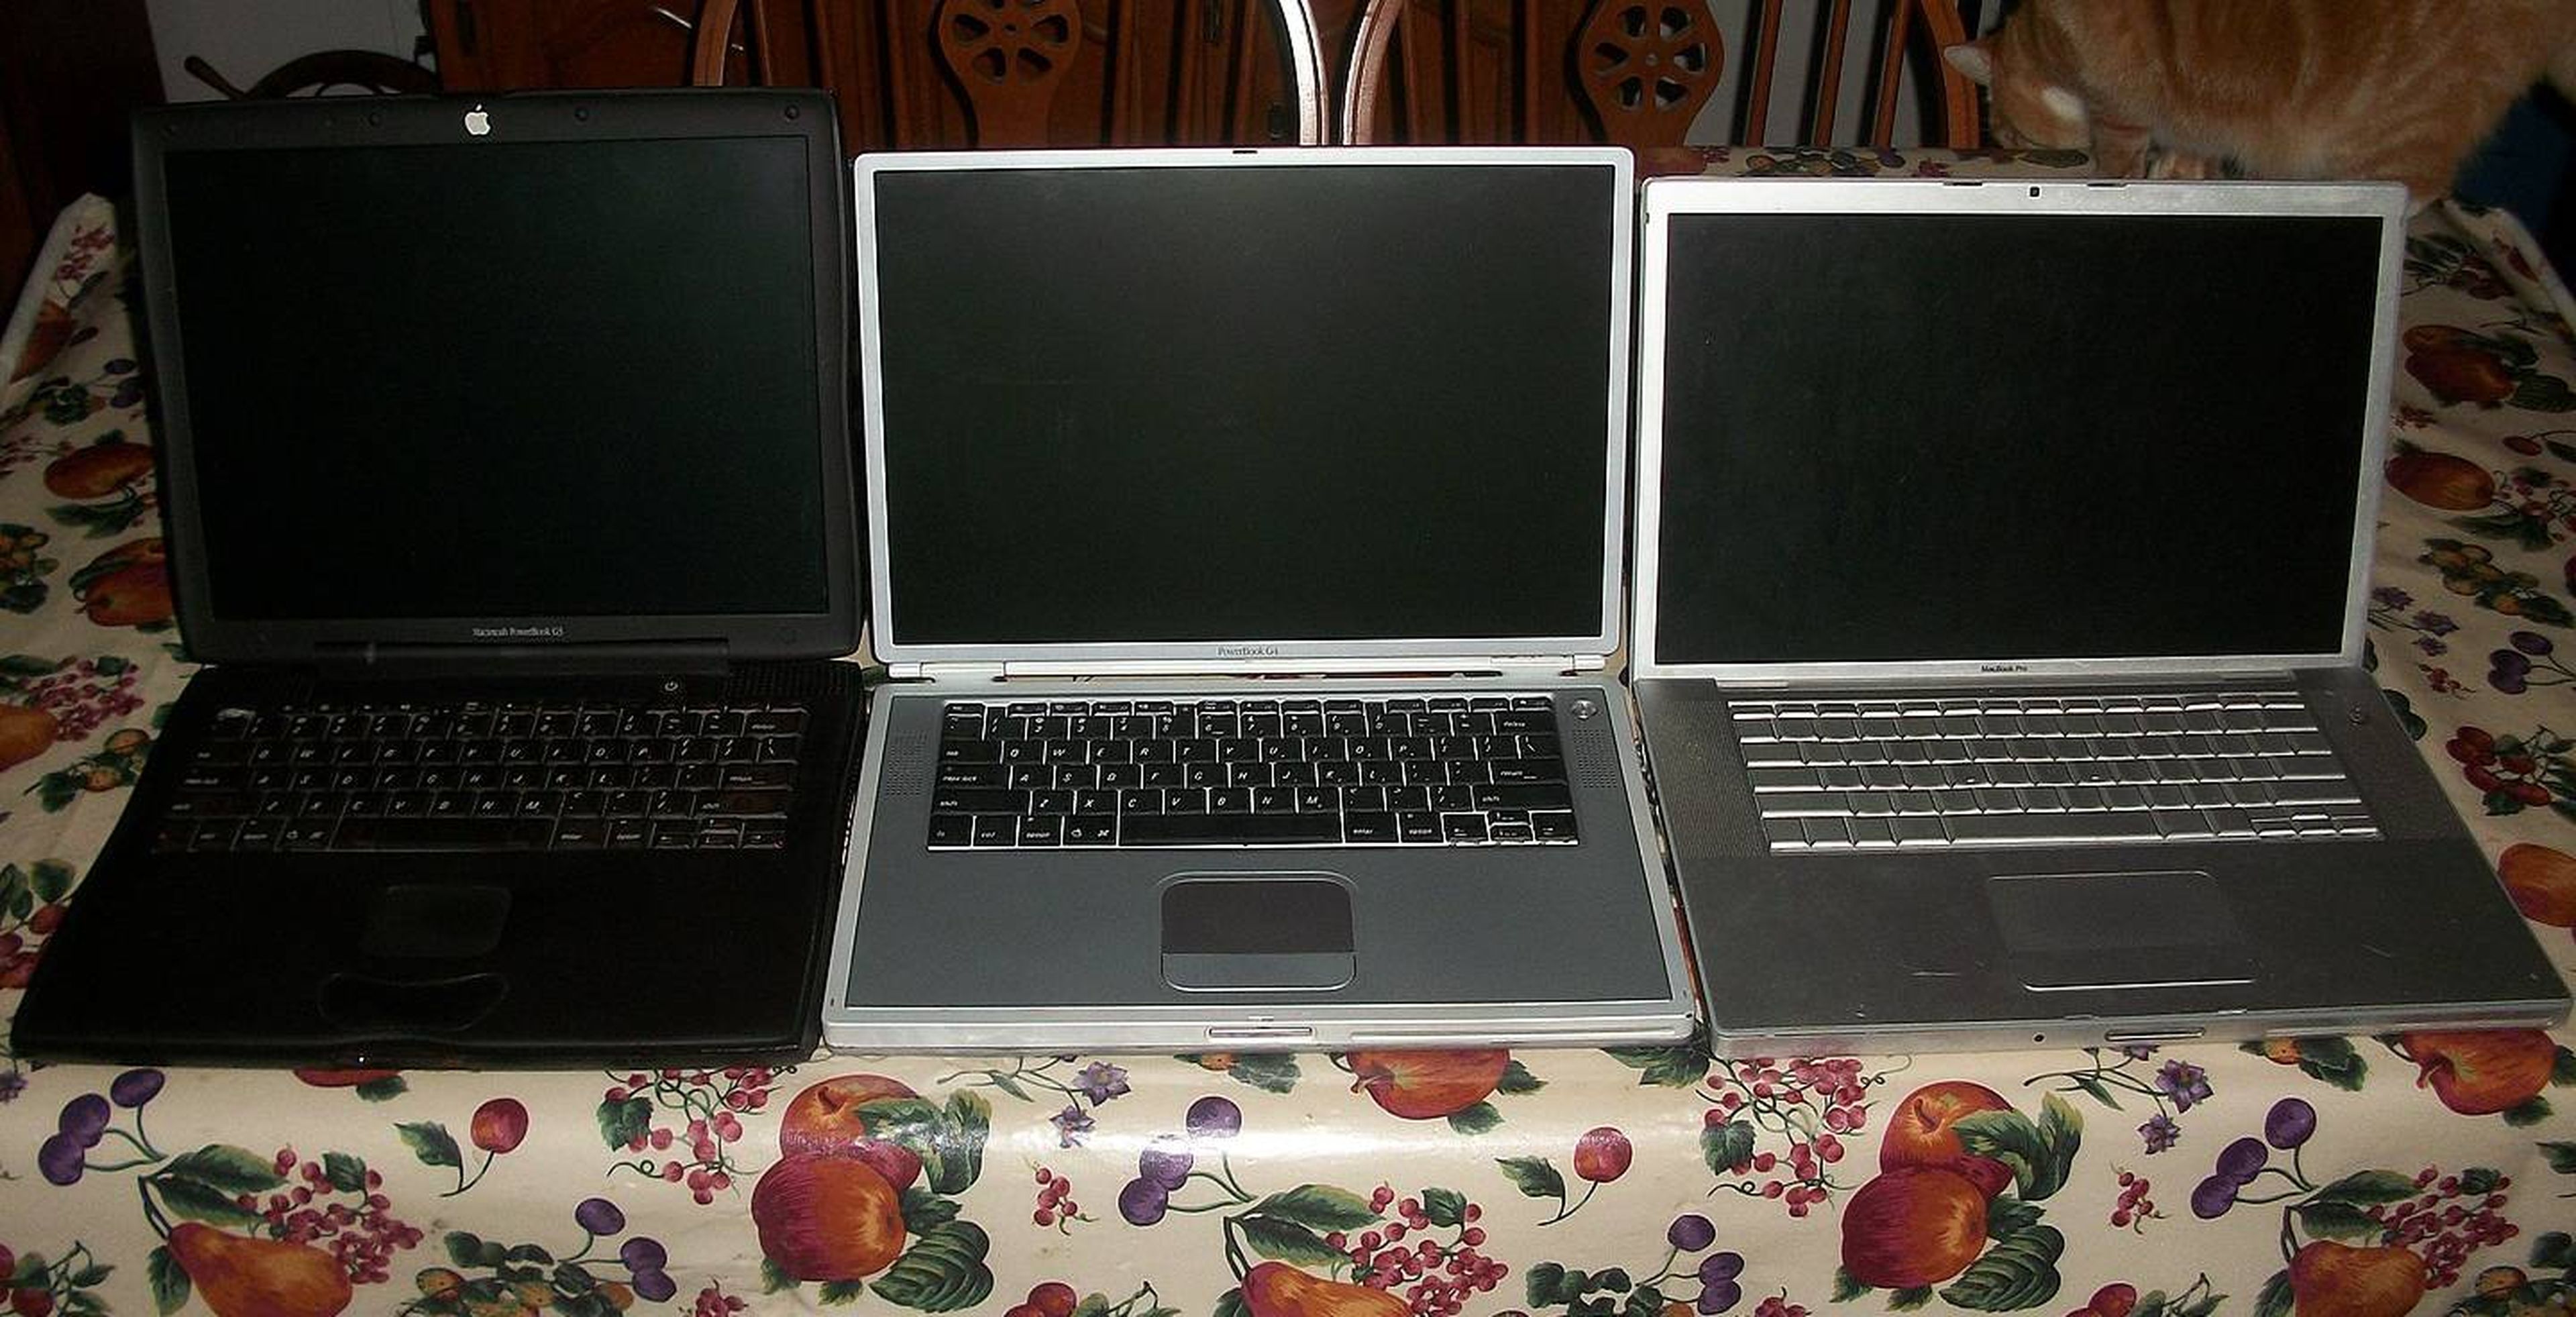 Comparativa, de izquierda a derecha: PowerBook G3, PowerBook G4 y MacBook Pro.